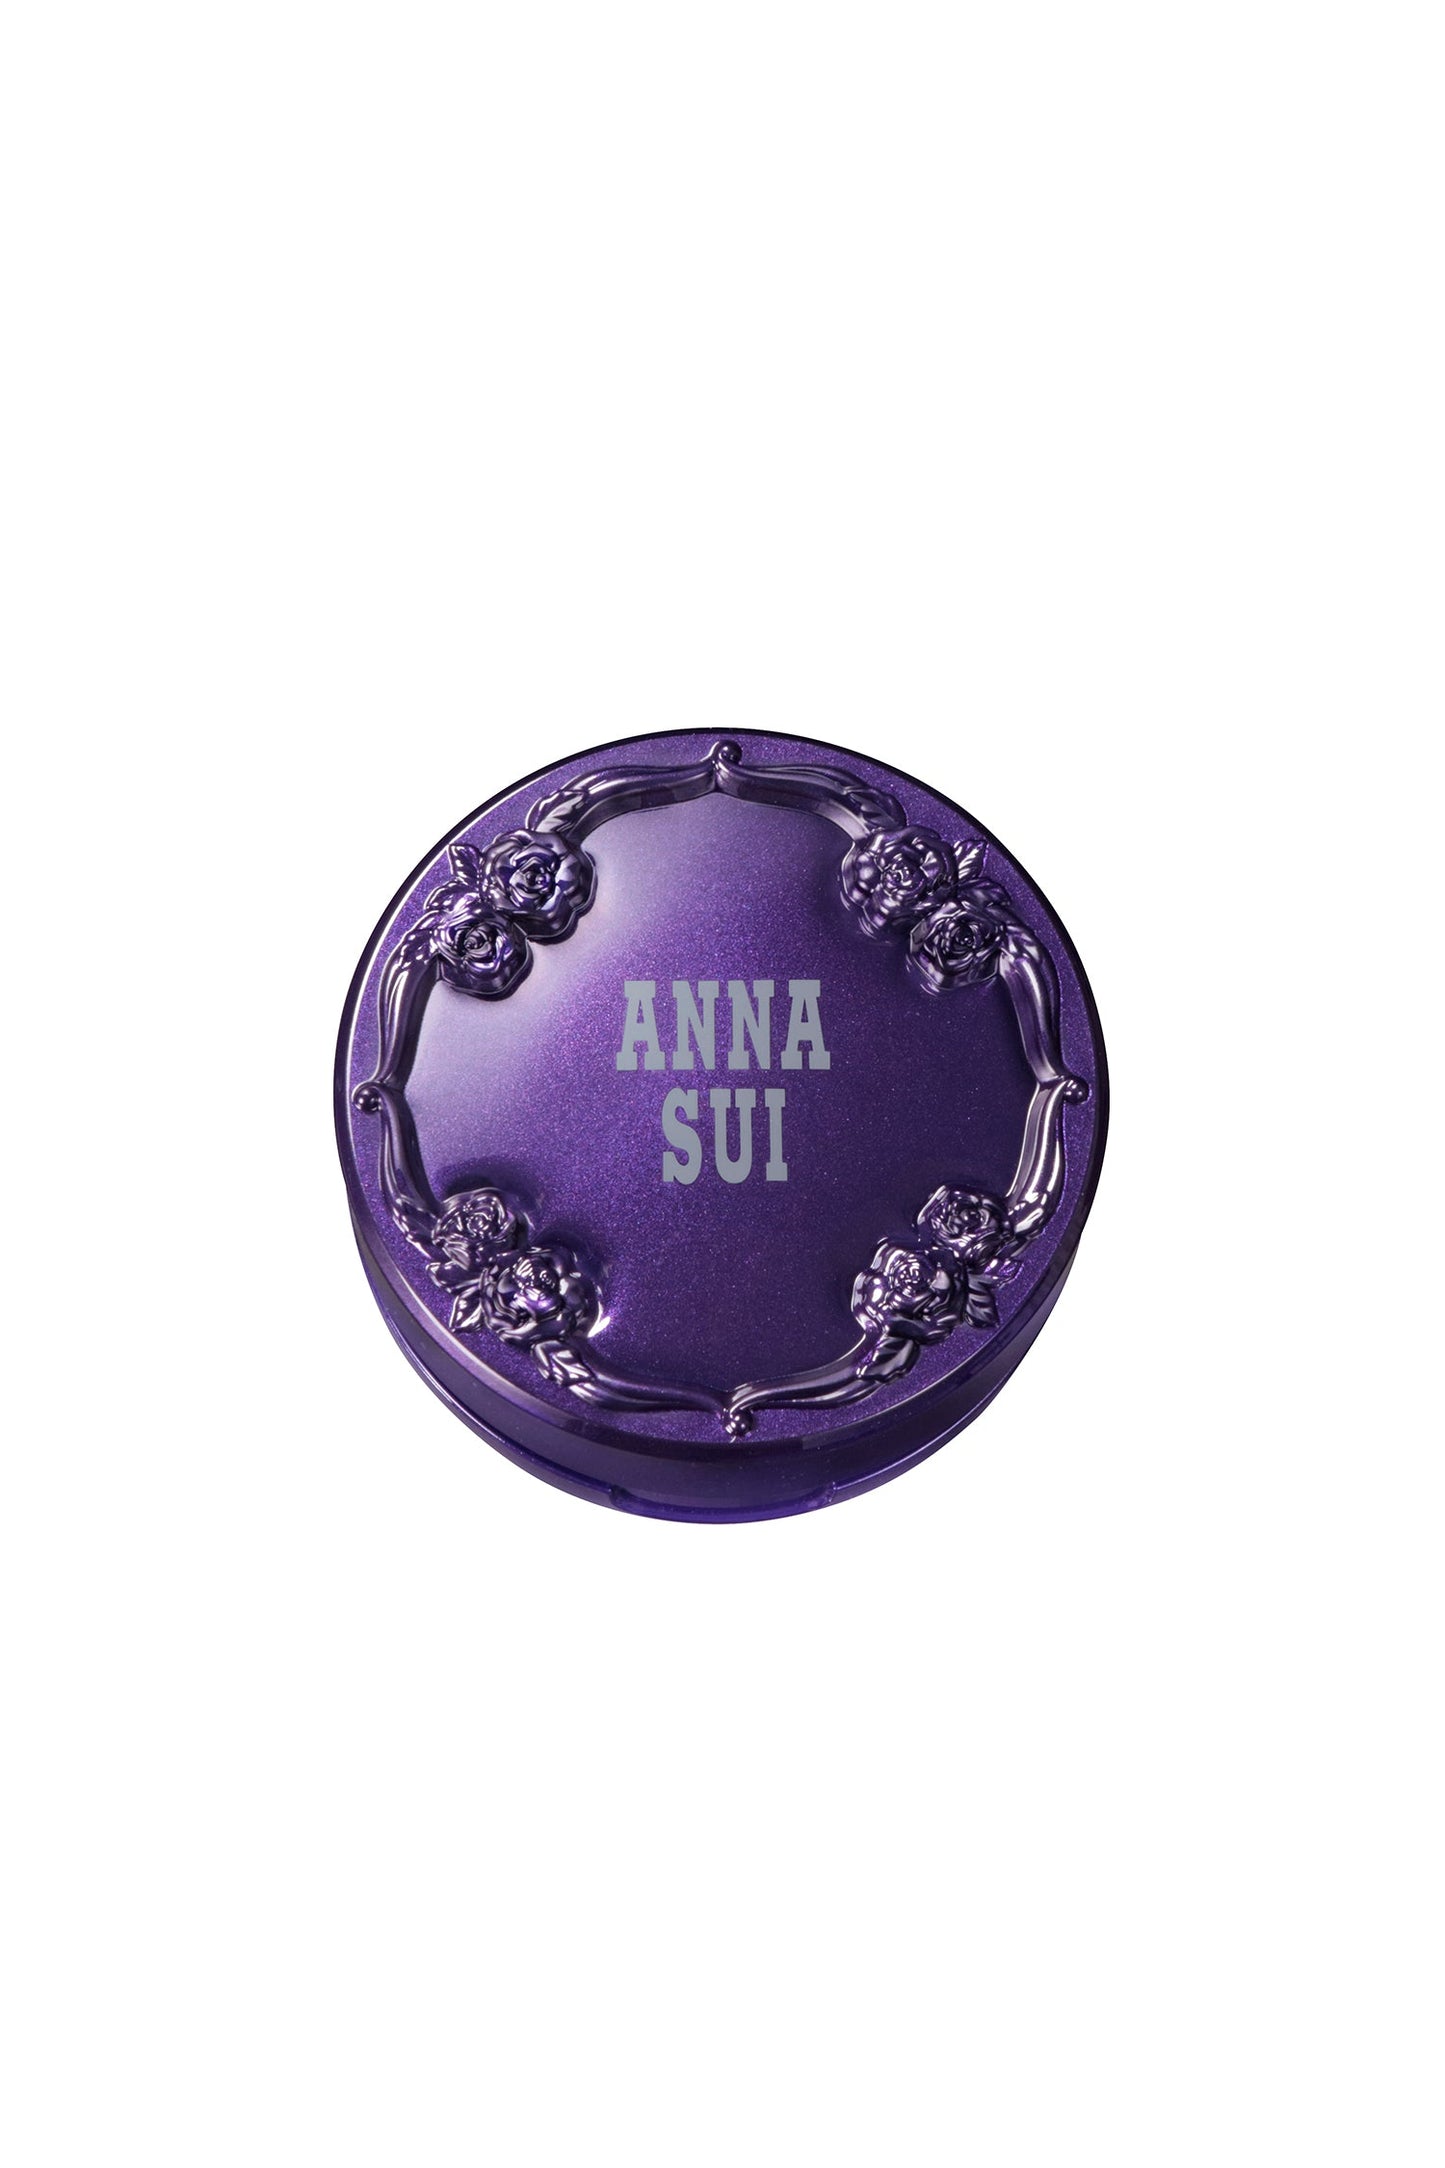 Contenitore rotondo di colore viola, sul coperchio un motivo a rose in rilievo e l'etichetta Anna Sui.